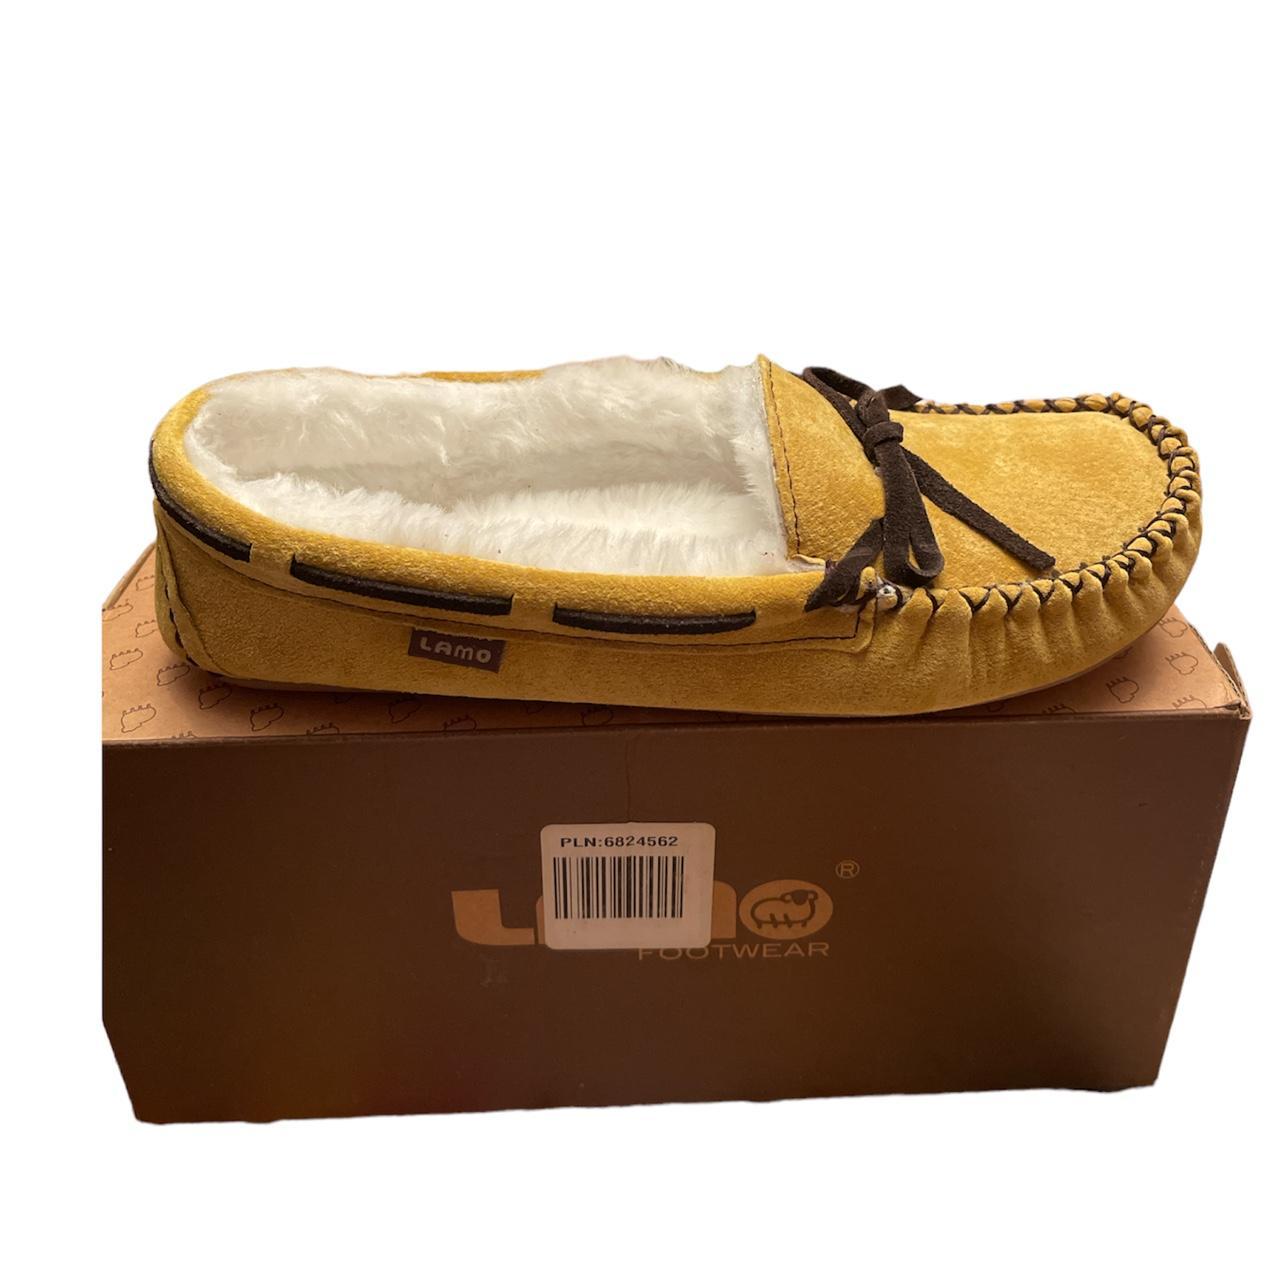 Lamo Women's Yellow and White Slippers (3)